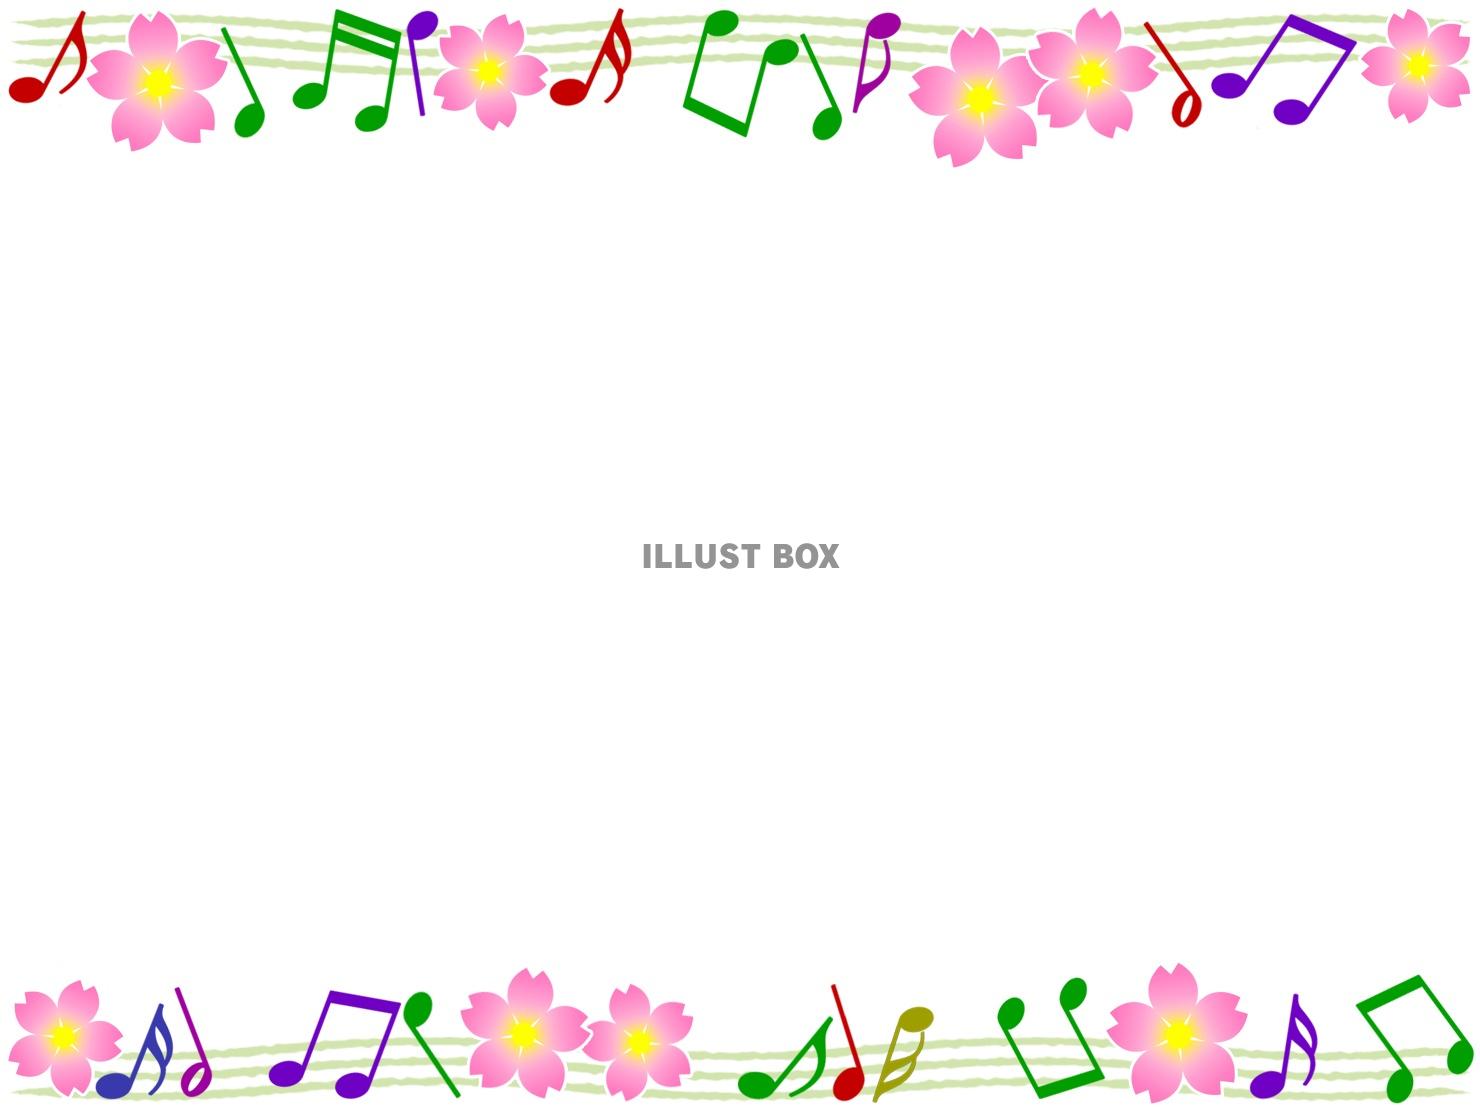 音符と桜の花模様の音楽フレーム飾り枠